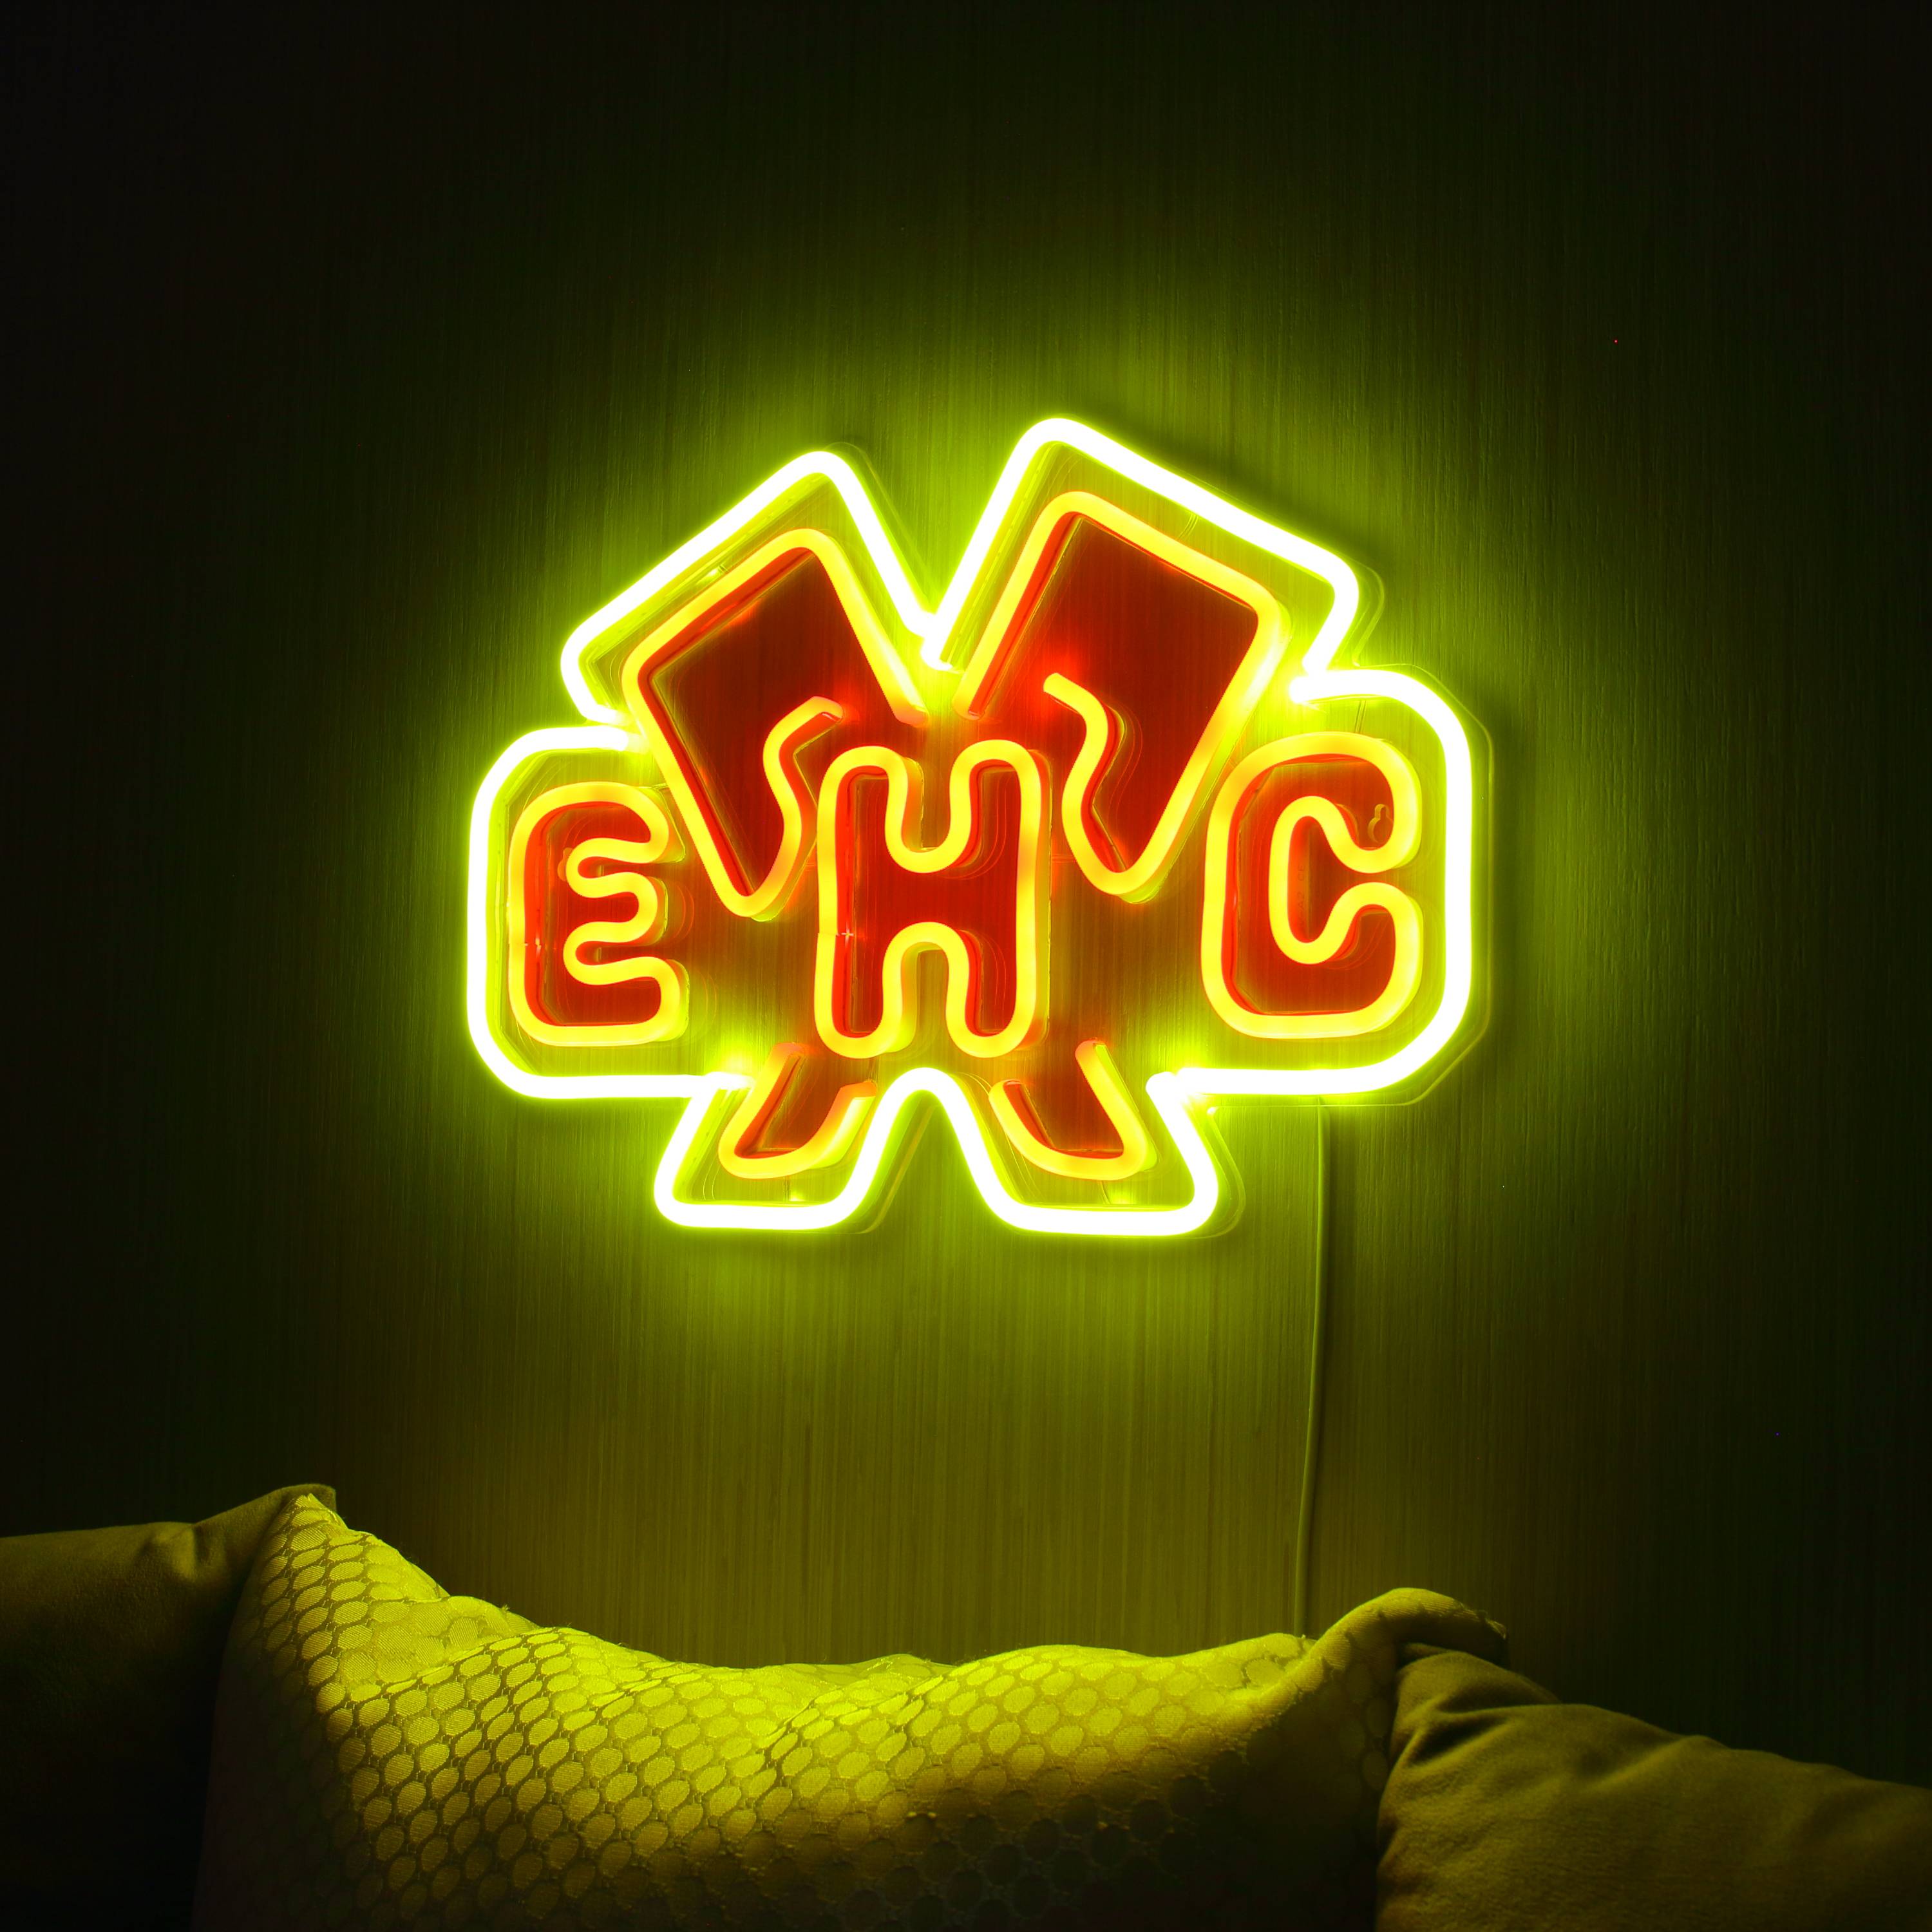 EHC BIEL-BIENNE LED Neon Sign